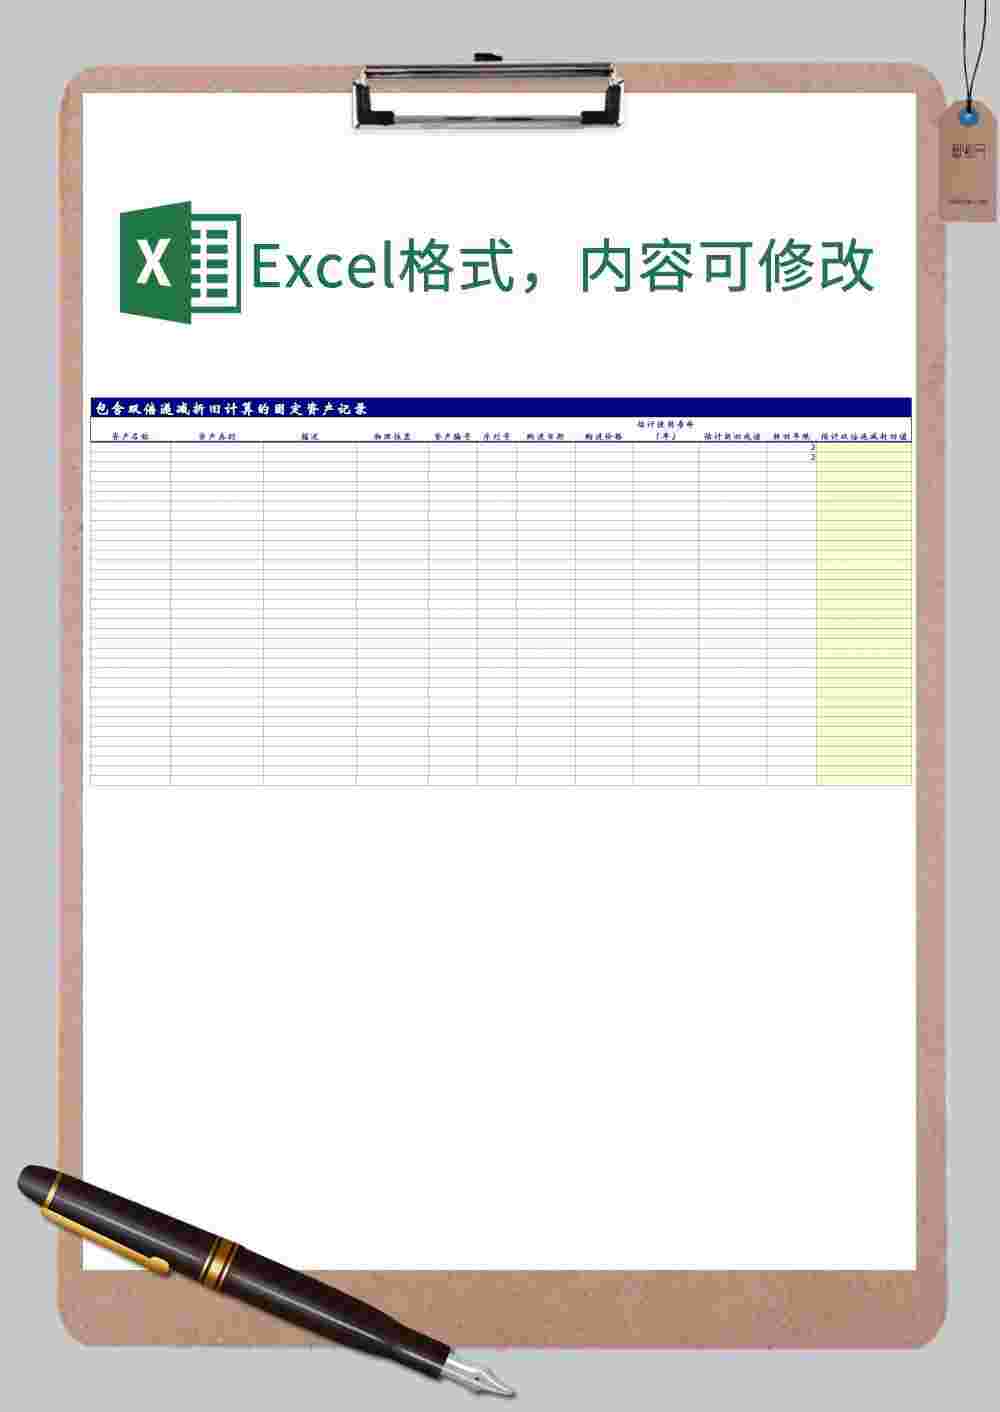 包含双倍递减折旧计算的固定资产记录表格样式Excel模板